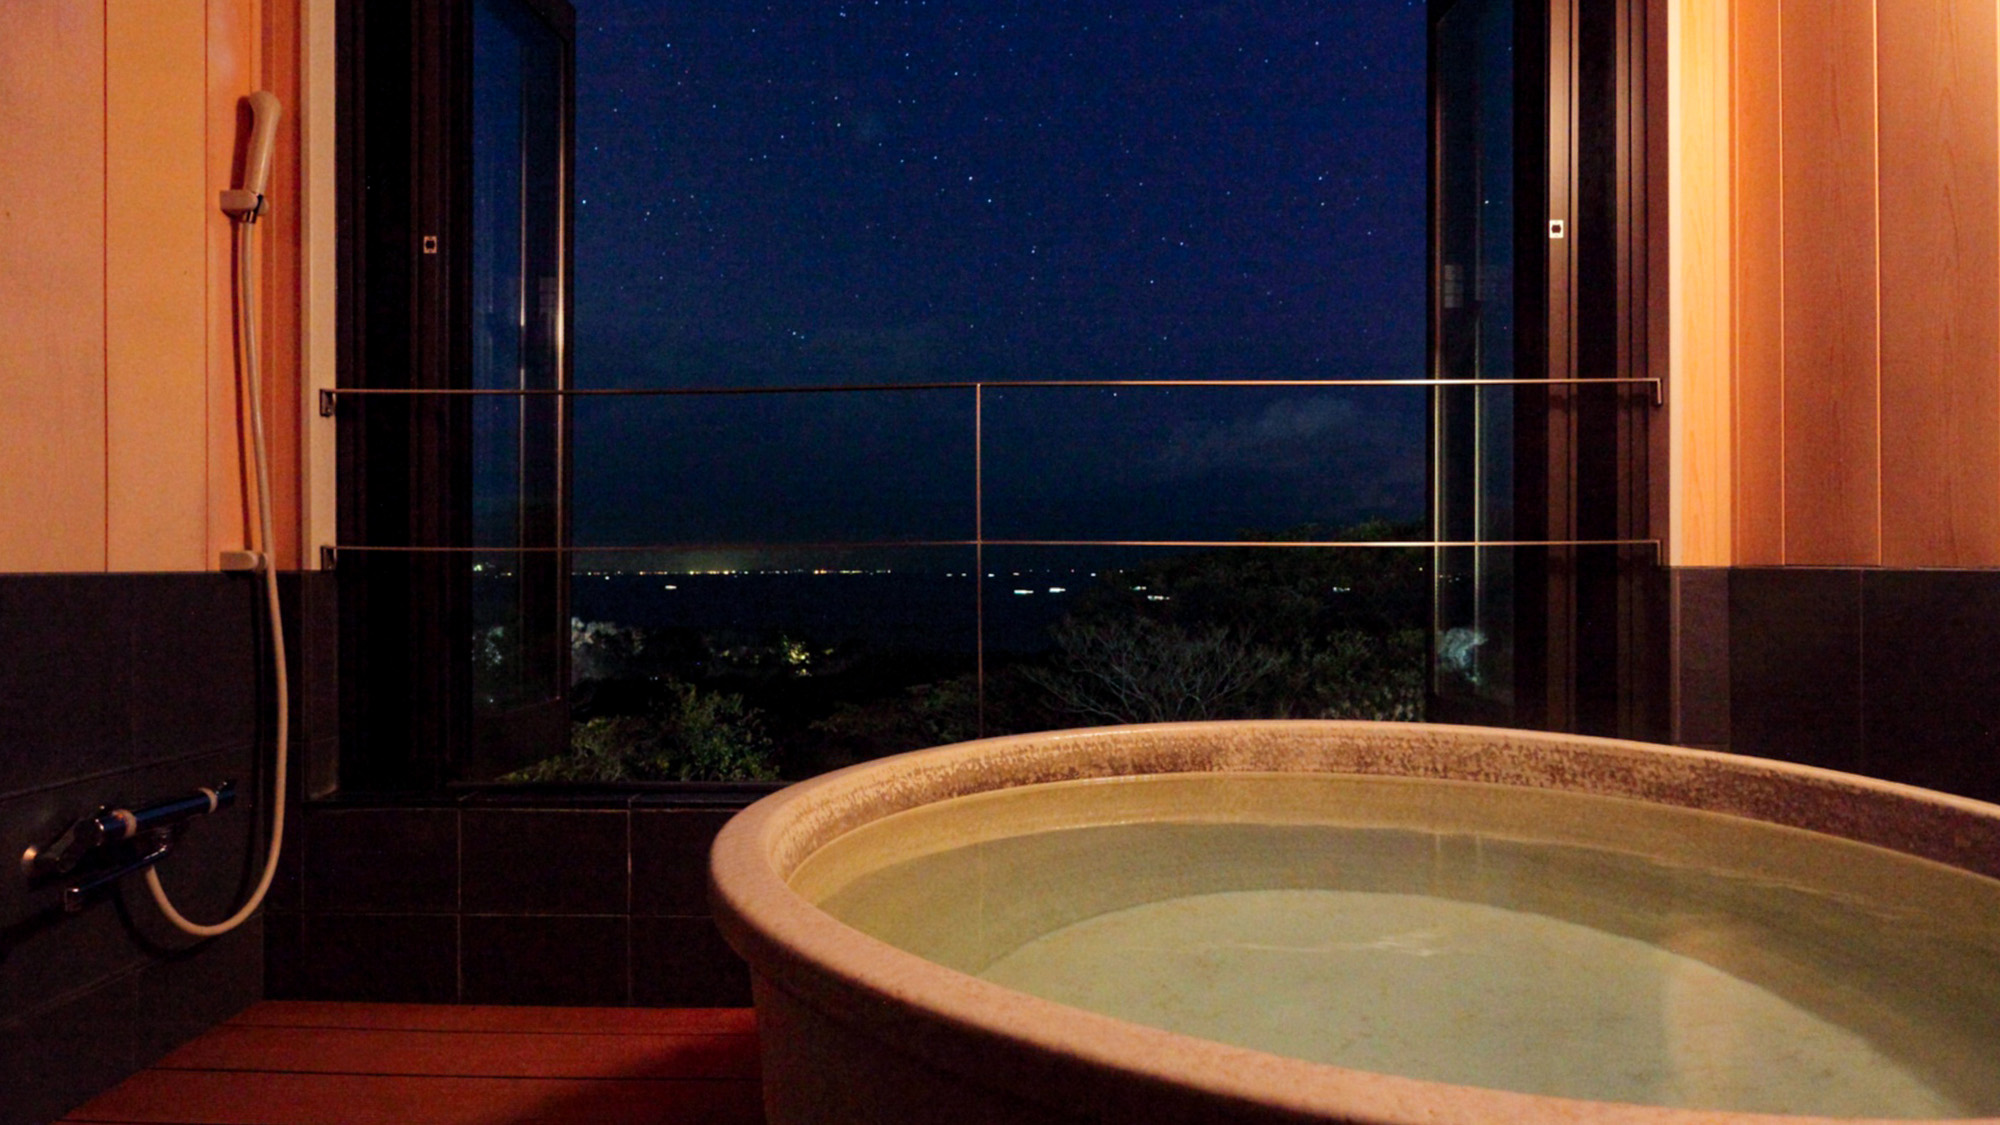 【海】客室のお風呂で星空を眺めながら日頃の疲れを癒してみませんか